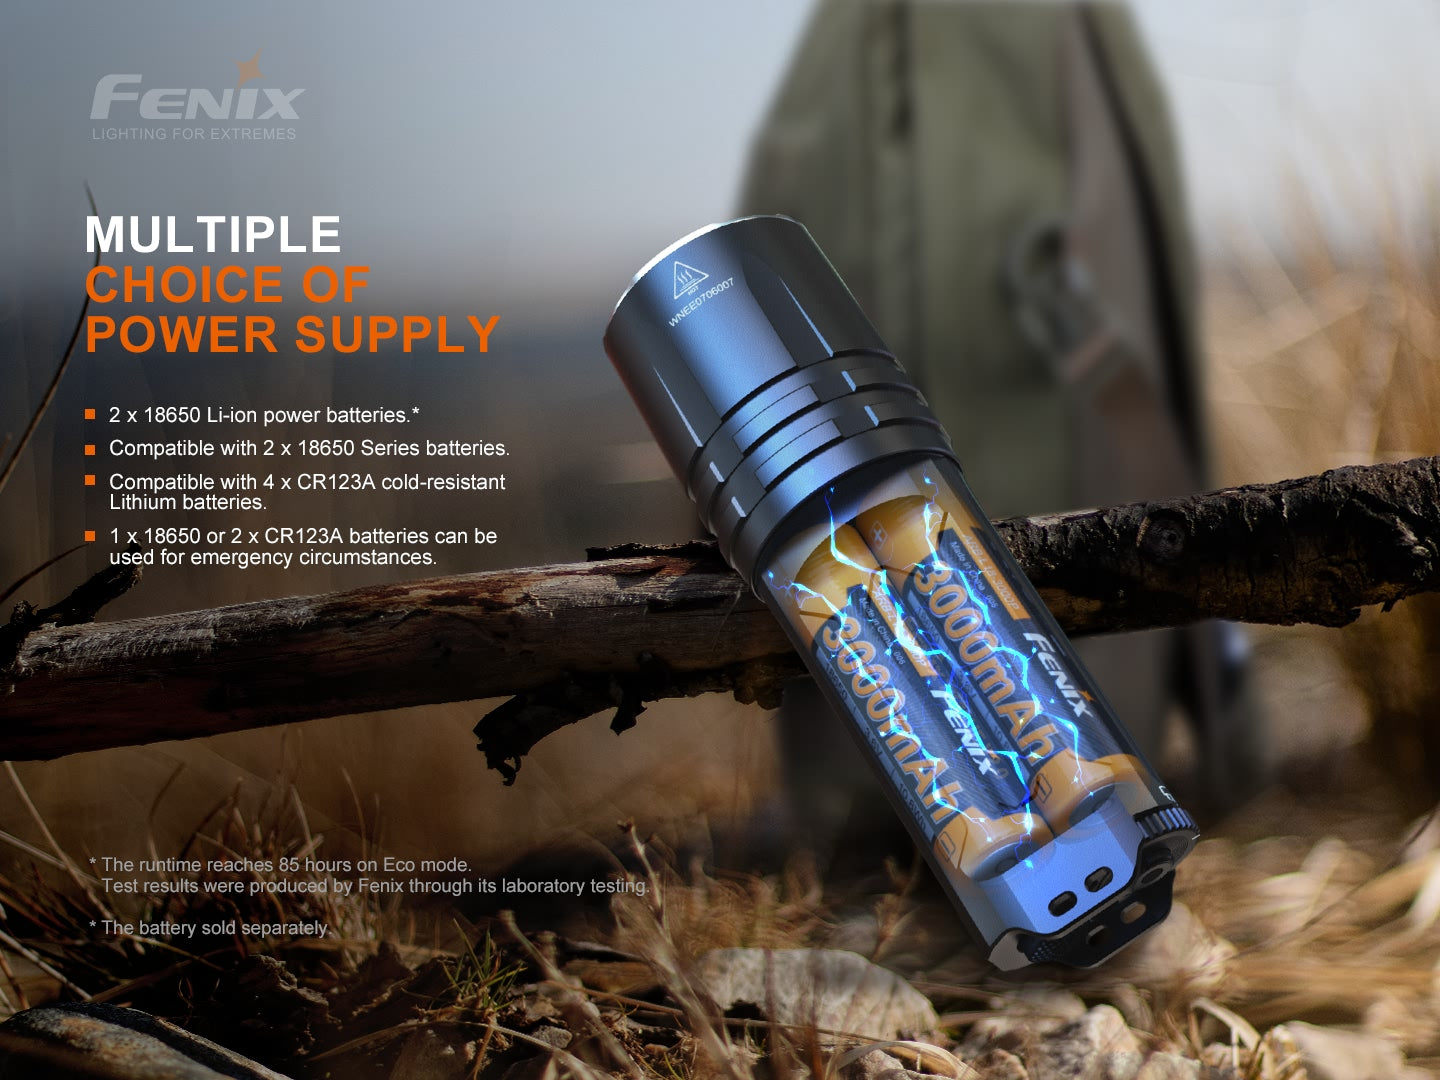 Fenix TK35UE V2.0 High Performance Flashlight 5000 Lumens